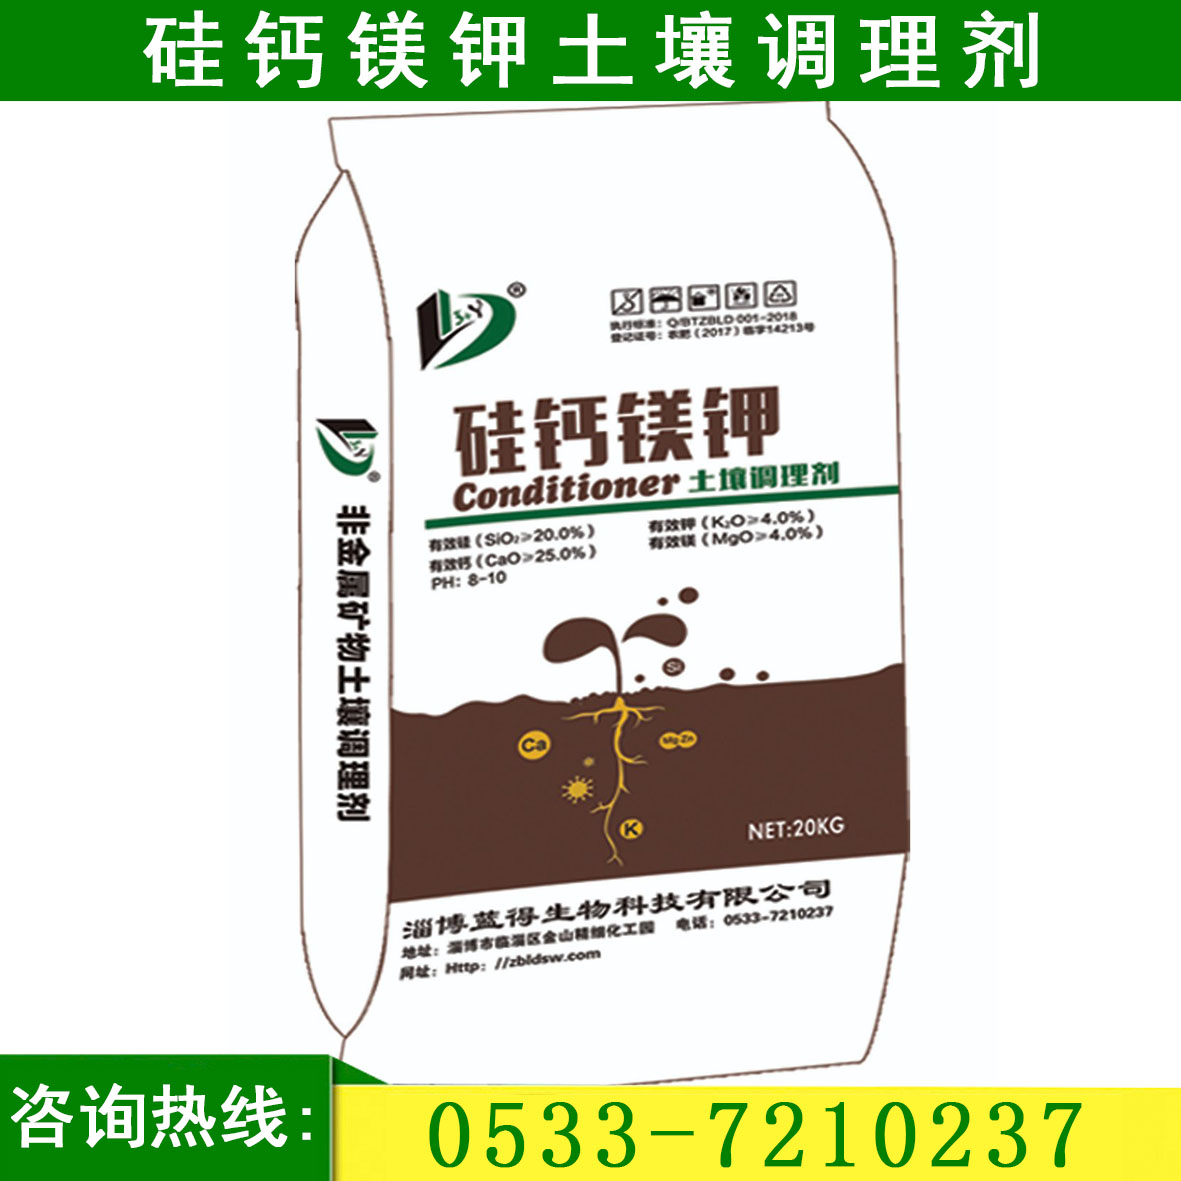 硅钙镁钾土壤调理剂原材料 硅钙镁钾土壤调理剂厂家